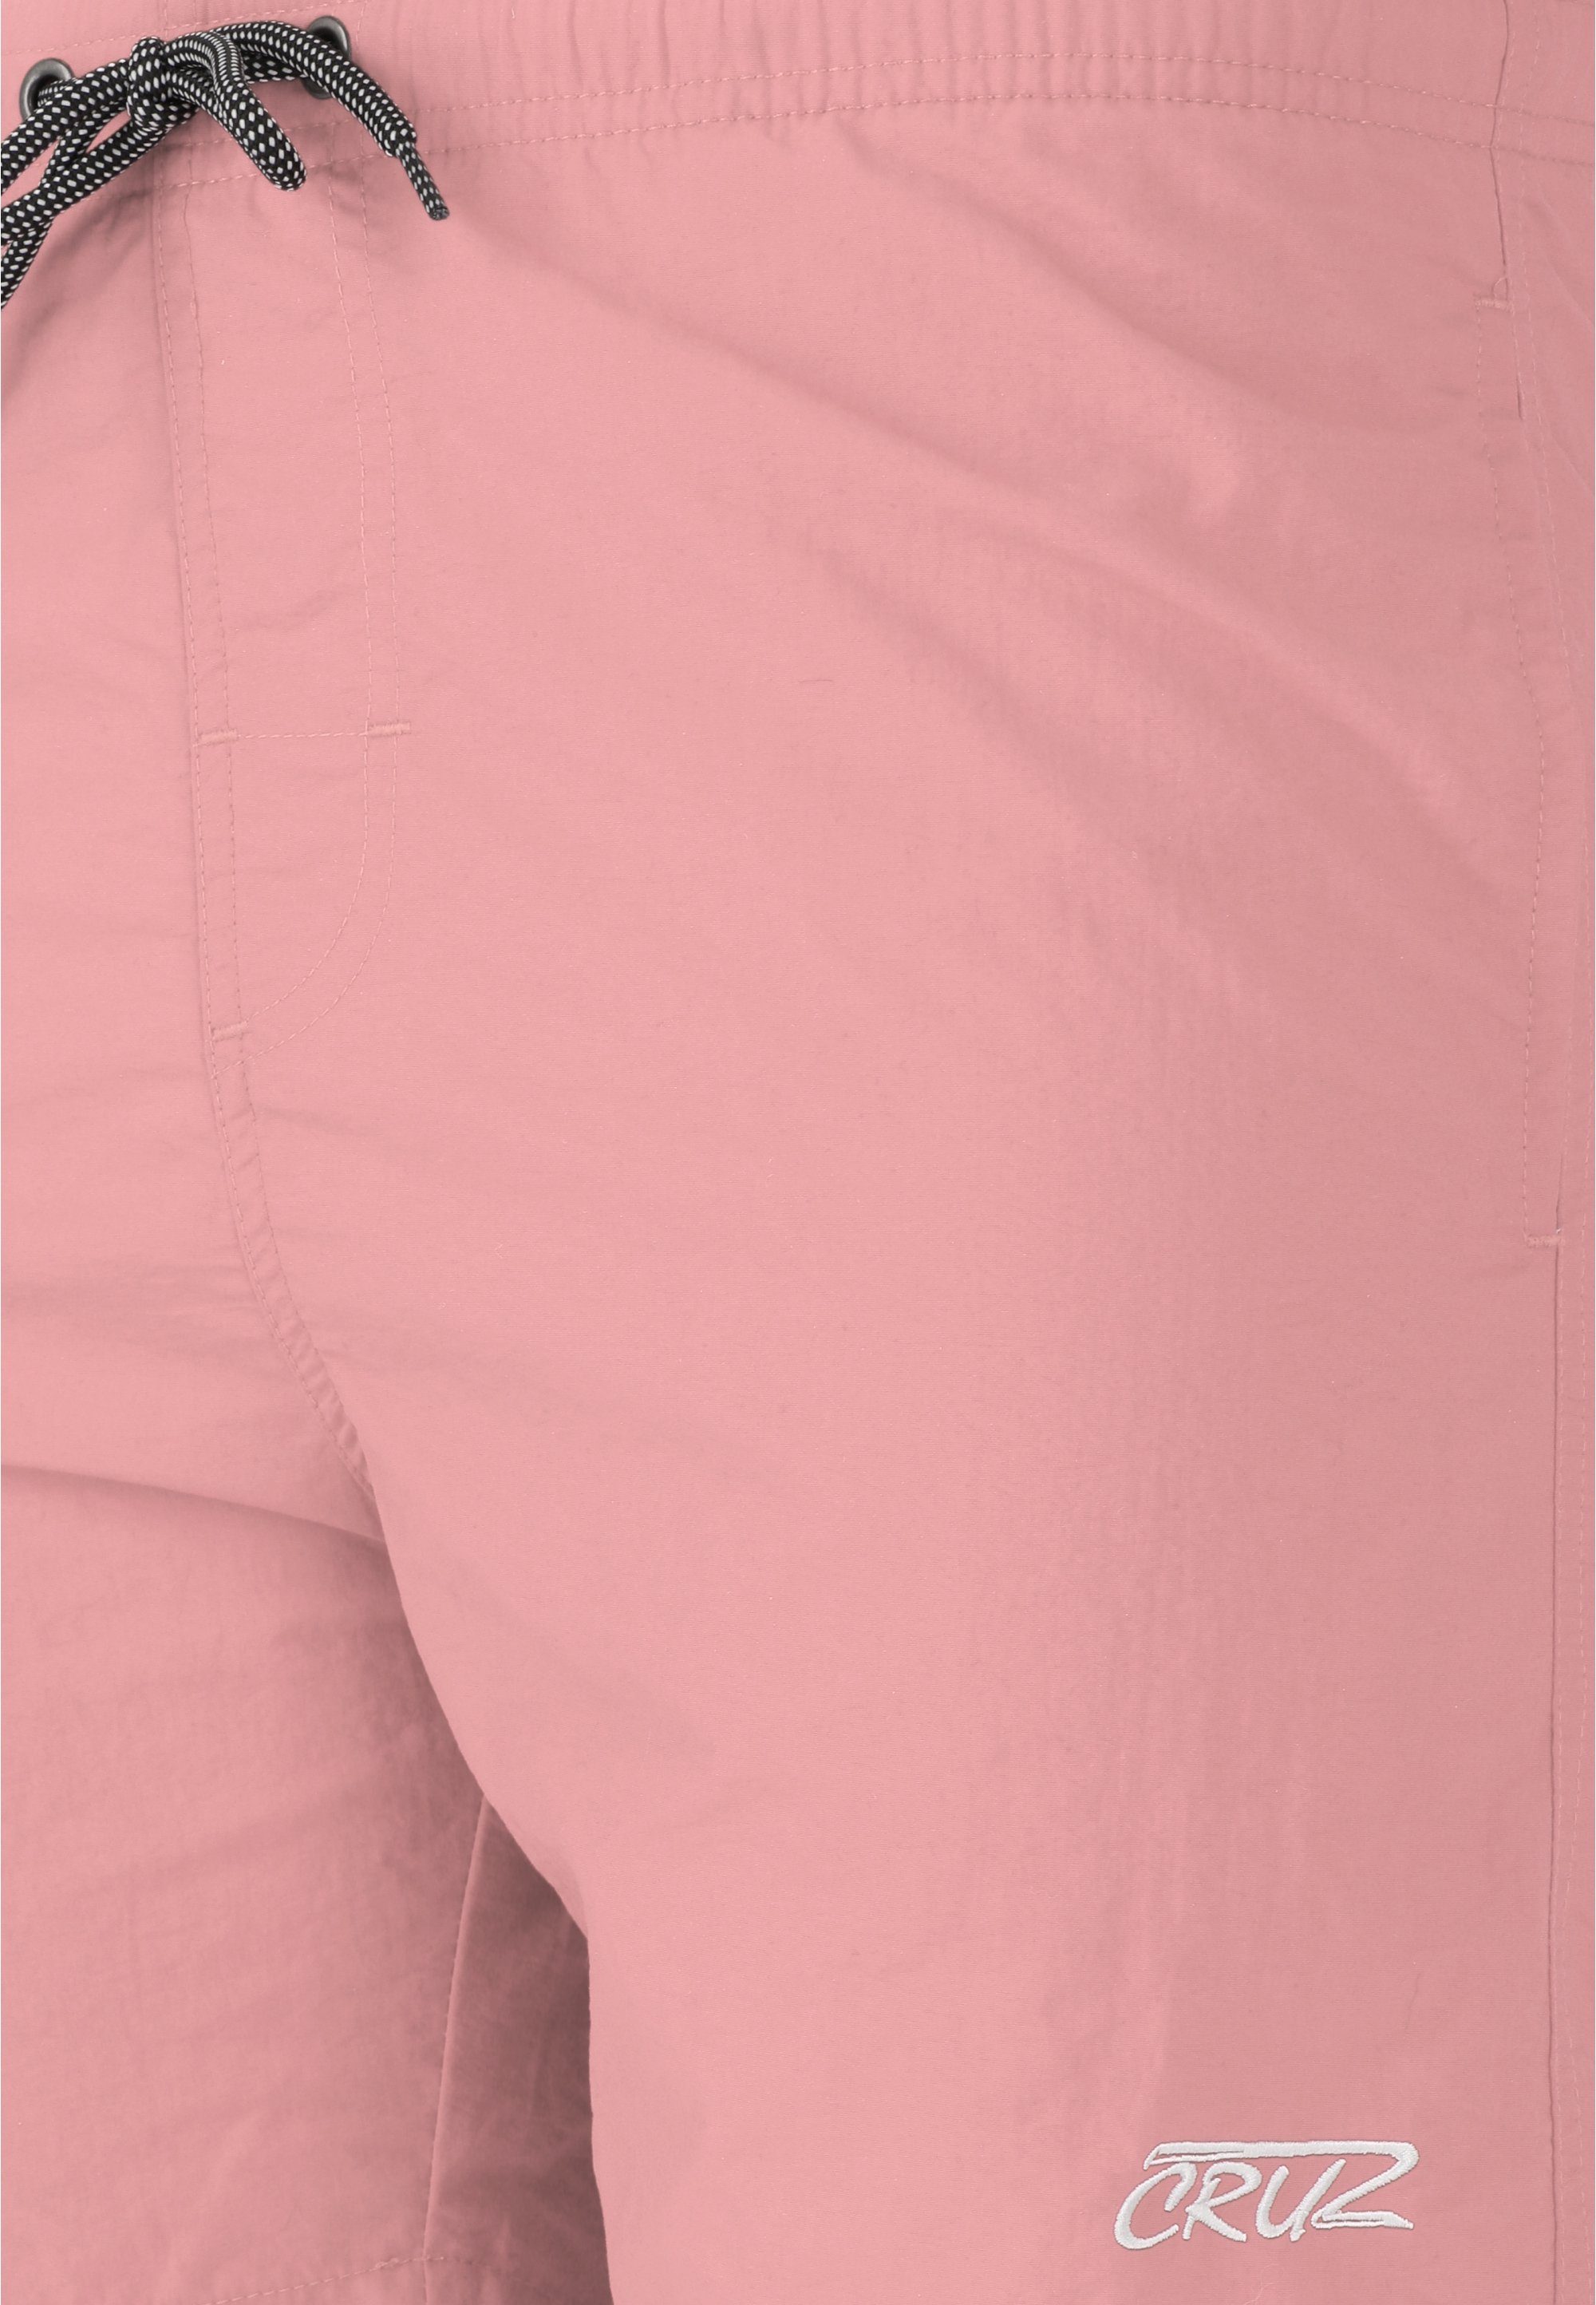 CRUZ Badehose klassischem in Design Clemont rosa